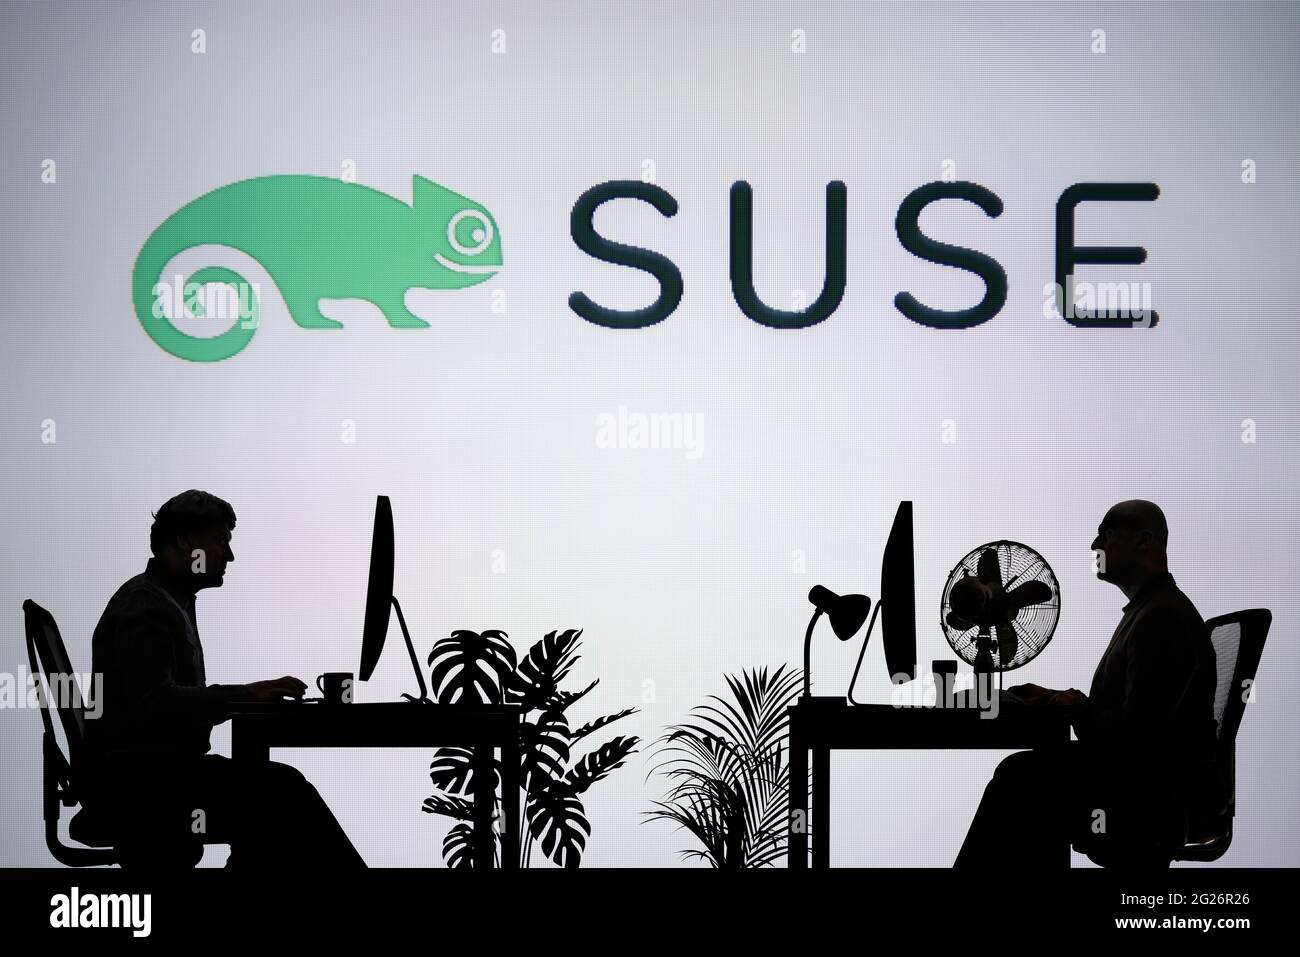 Le logo SUSE est visible sur un écran LED en arrière-plan tandis que deux personnes silhoueteuses travaillent dans un environnement de bureau (usage éditorial uniquement) Banque D'Images